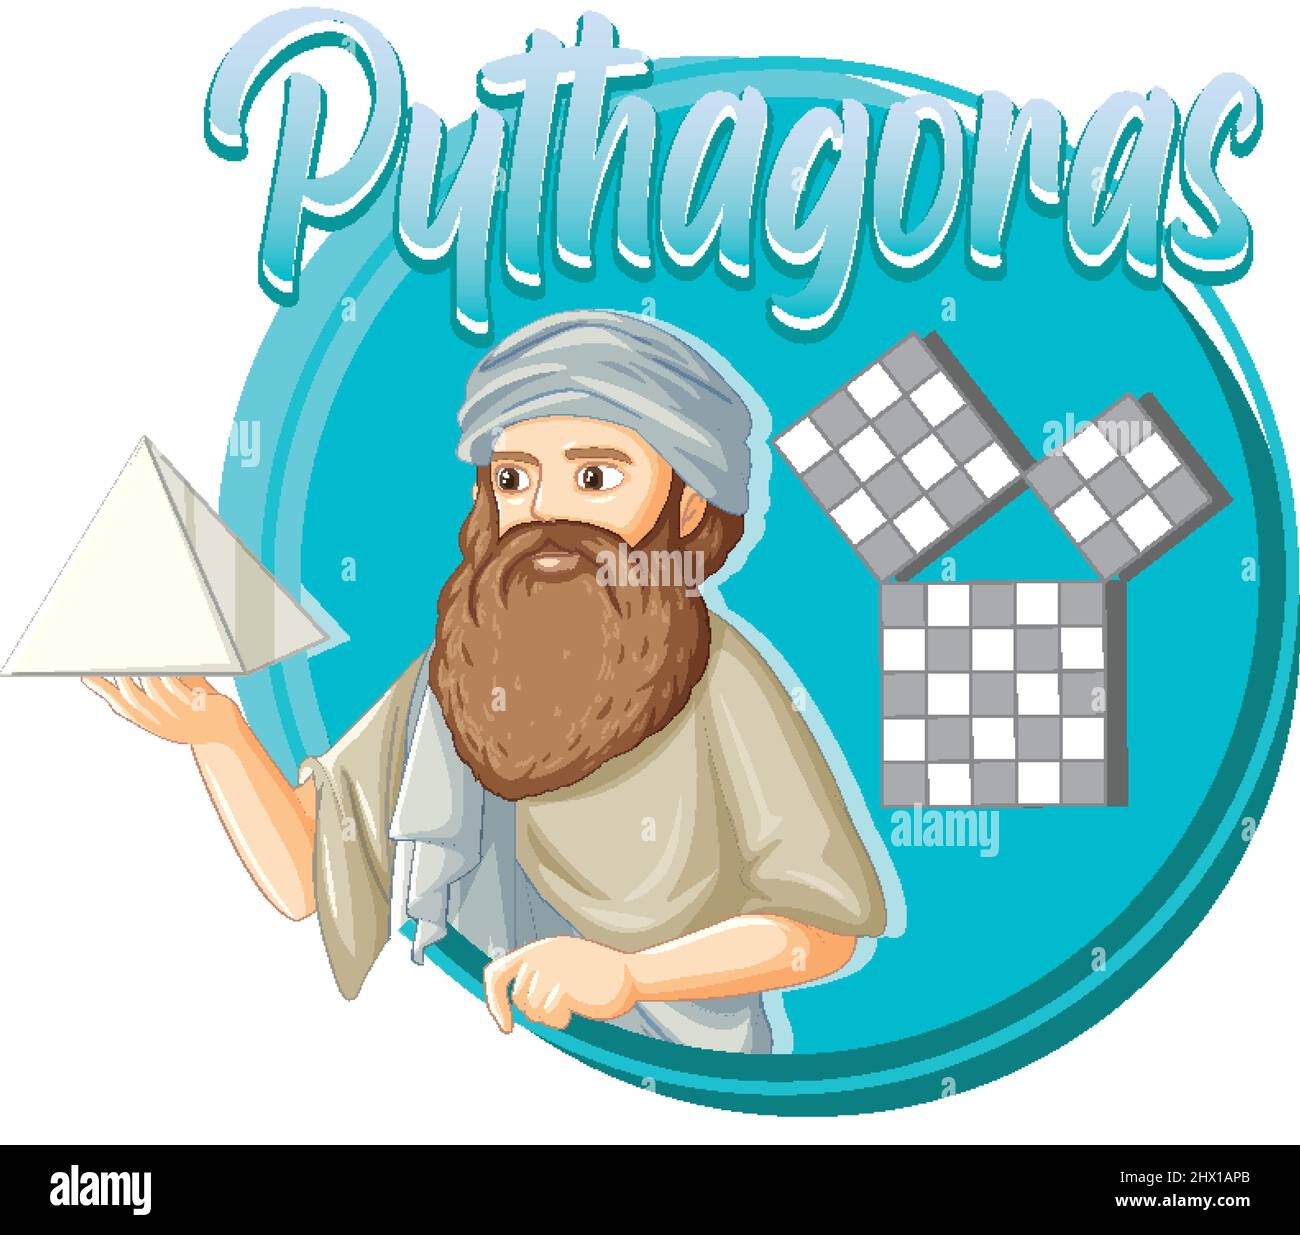 Pythagoras Philosoph in Cartoon-Stil Illustration Stock Vektor